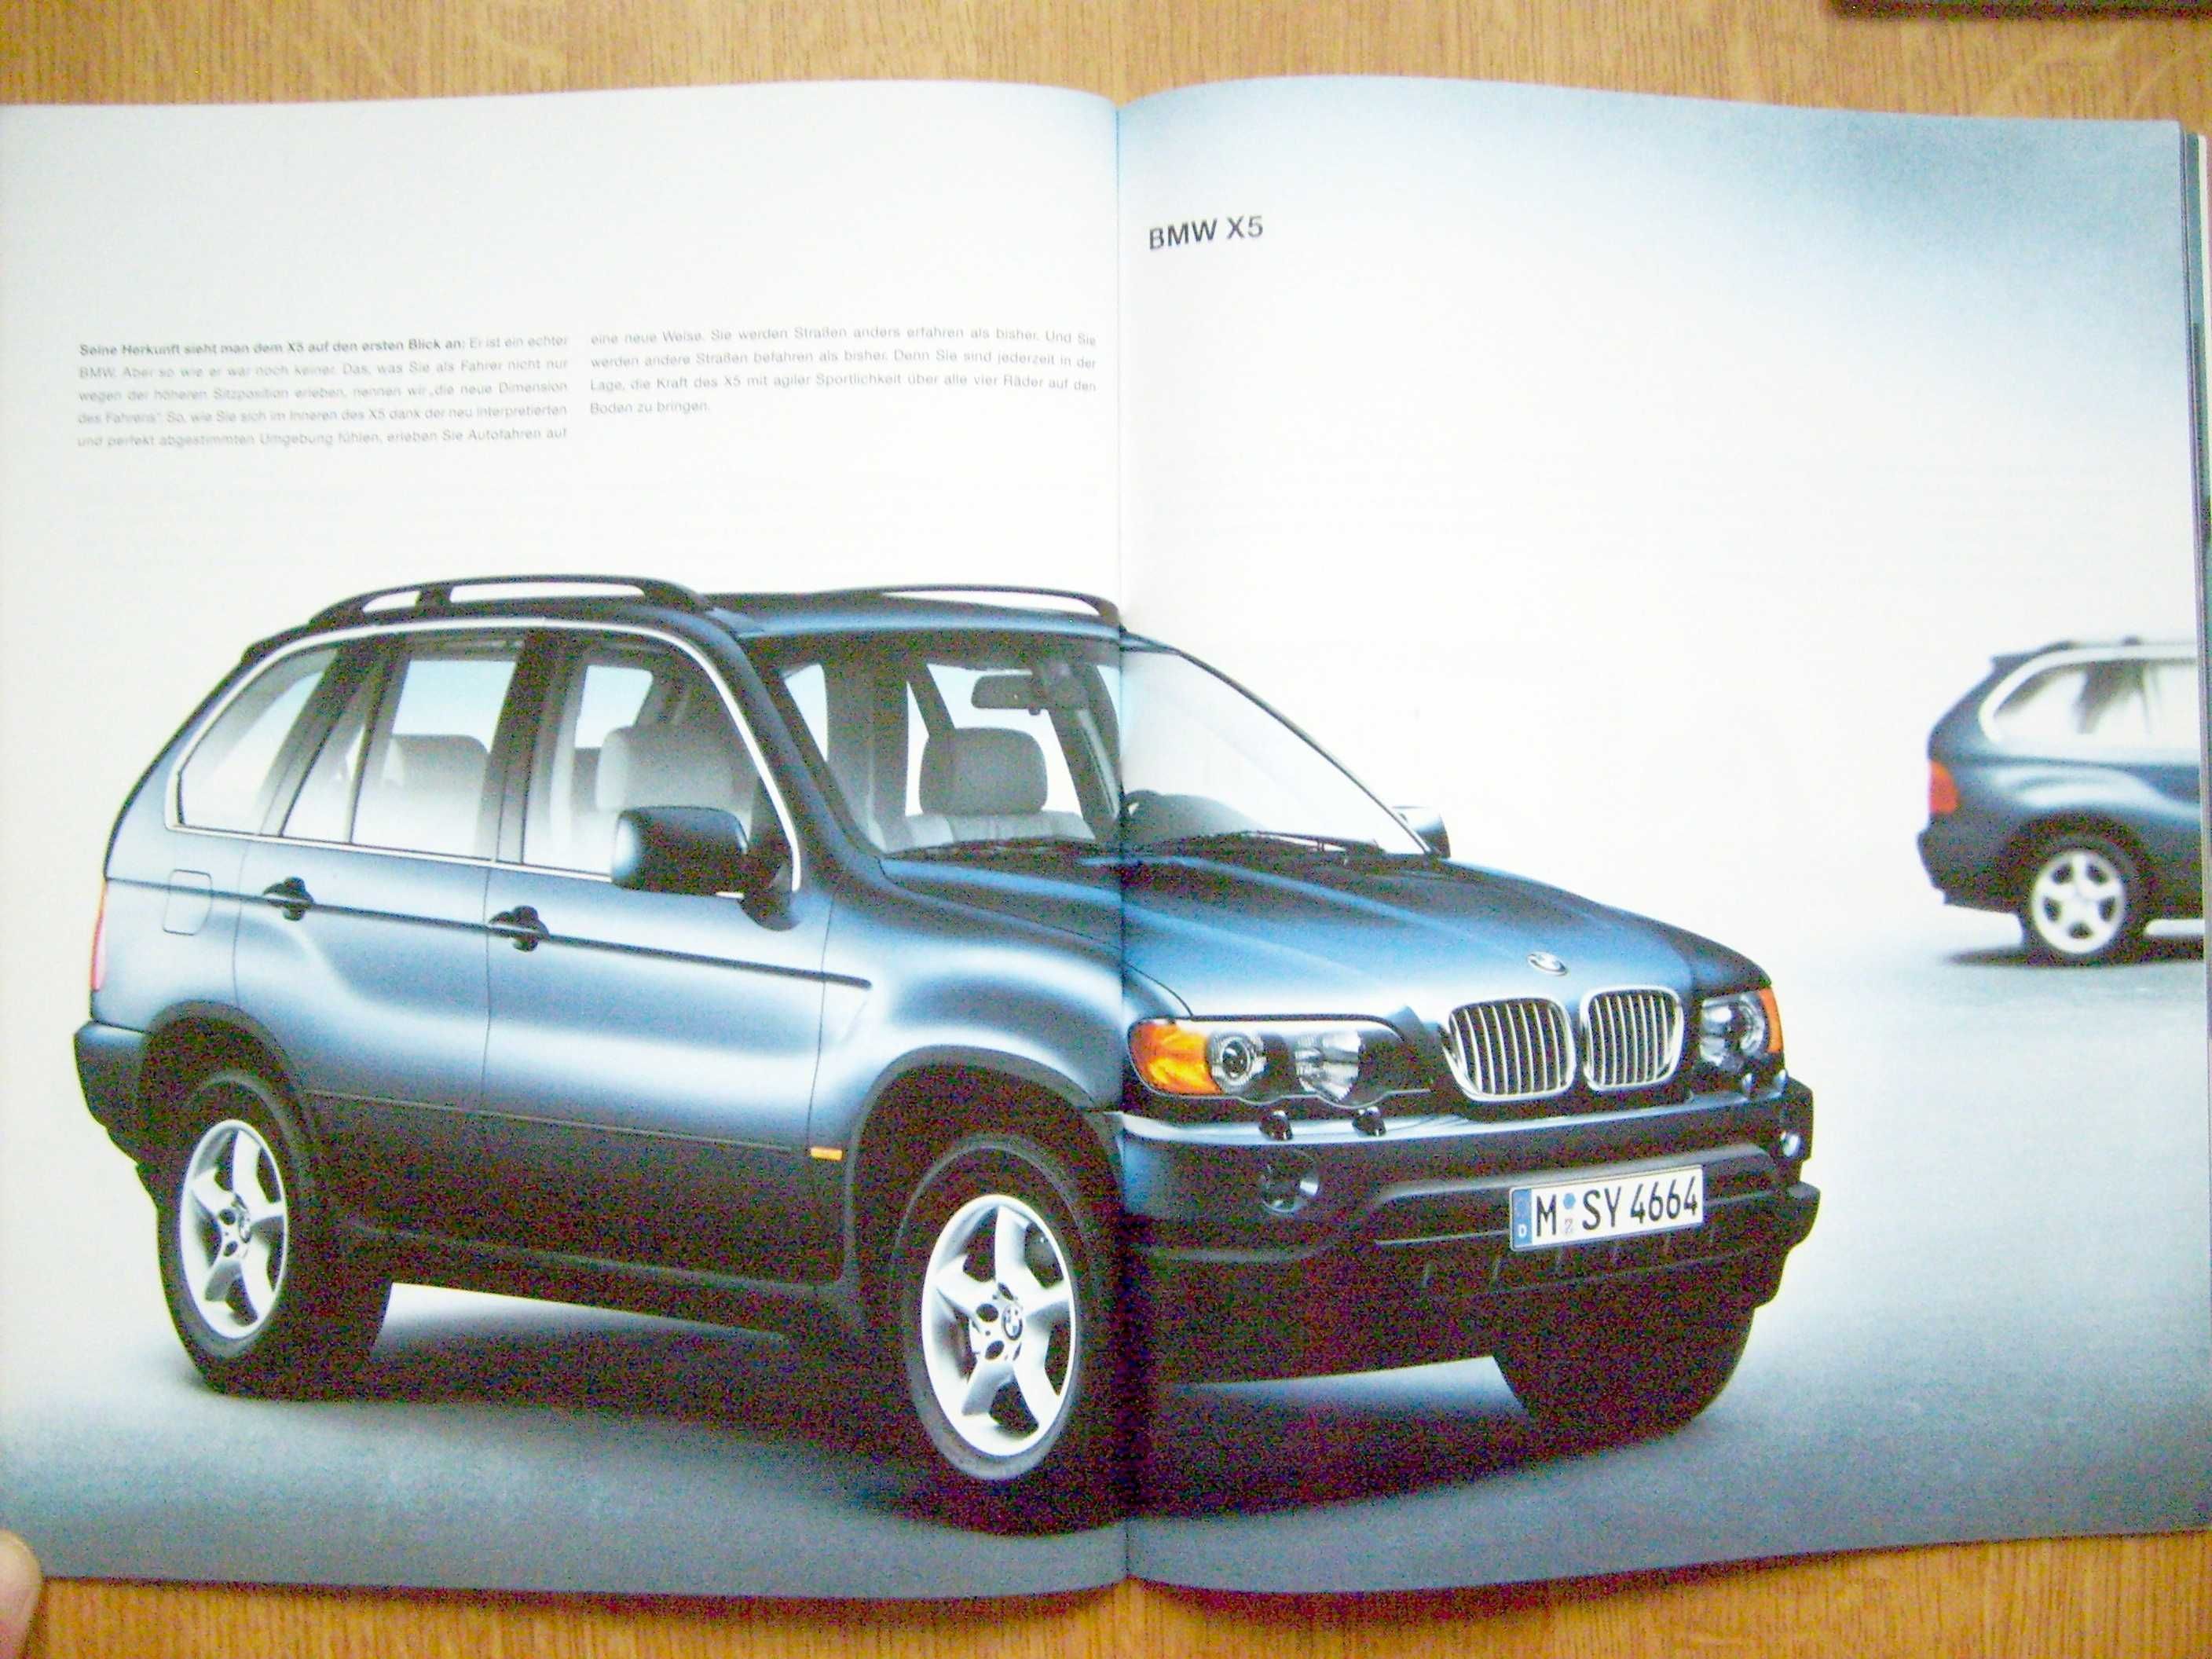 BMW 2000 katalog 68 str./ Z3 (E36/7) 3-E46 5-E39 7-E38 X5-E53 Z8-E52